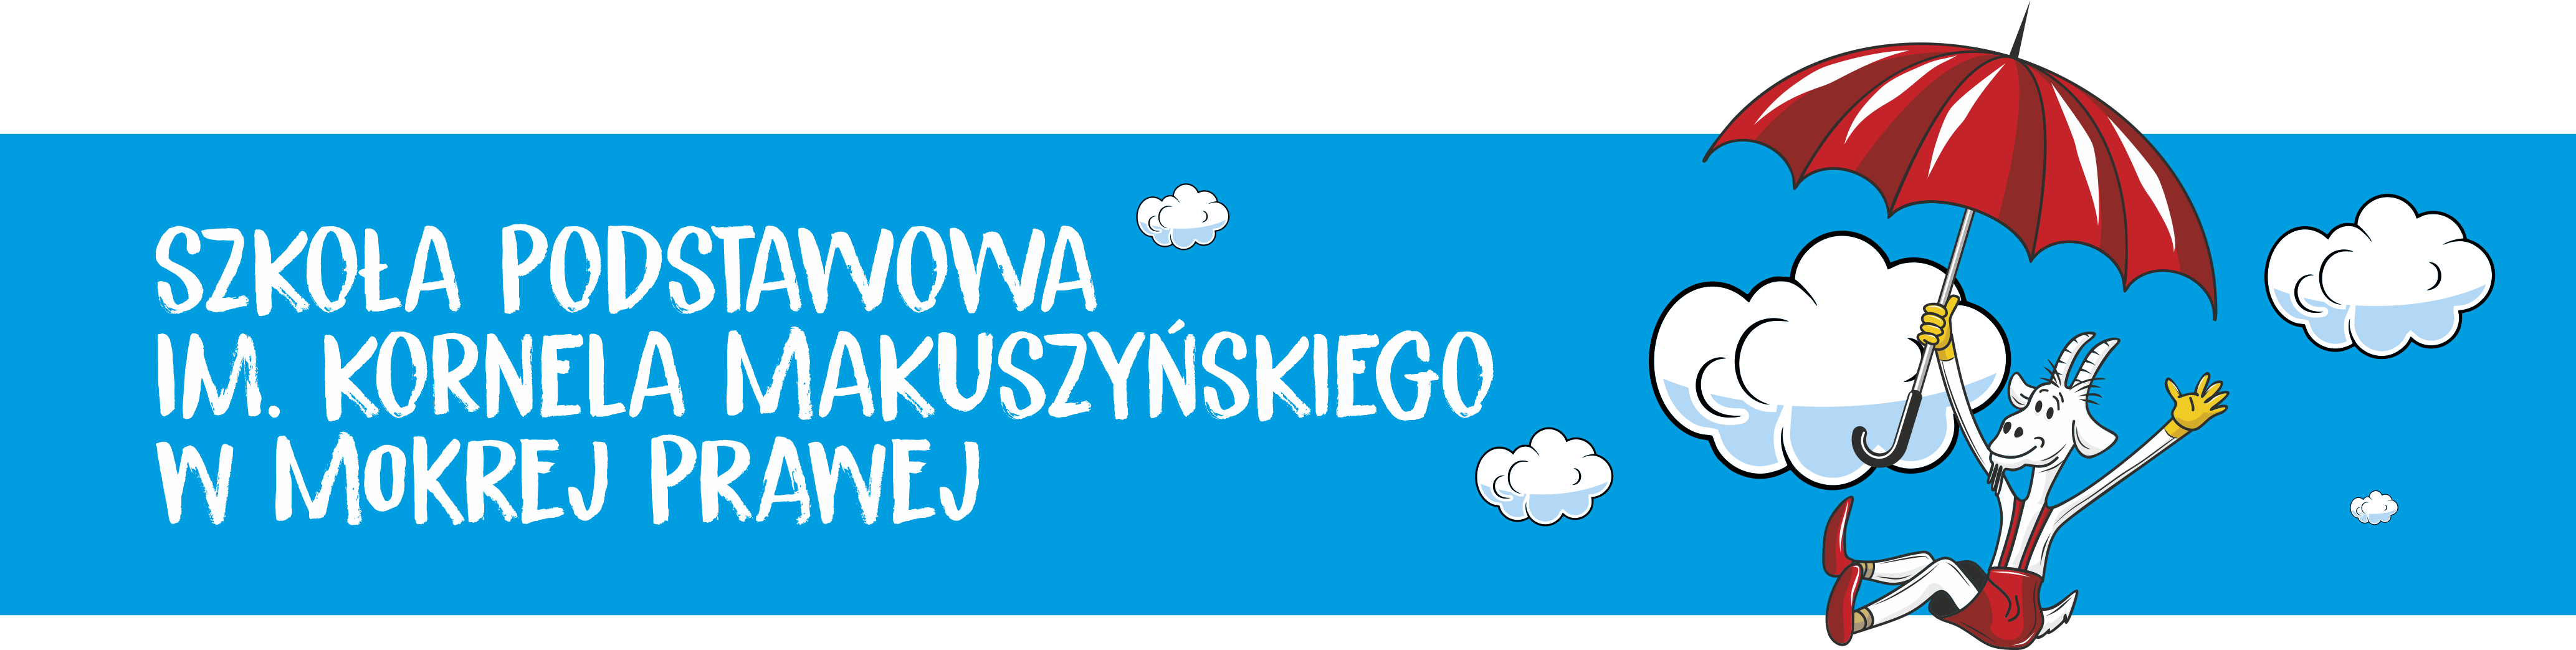 Szkoła Podstawowa im. Kornela Makuszyńskiego w Mokrej Prawej